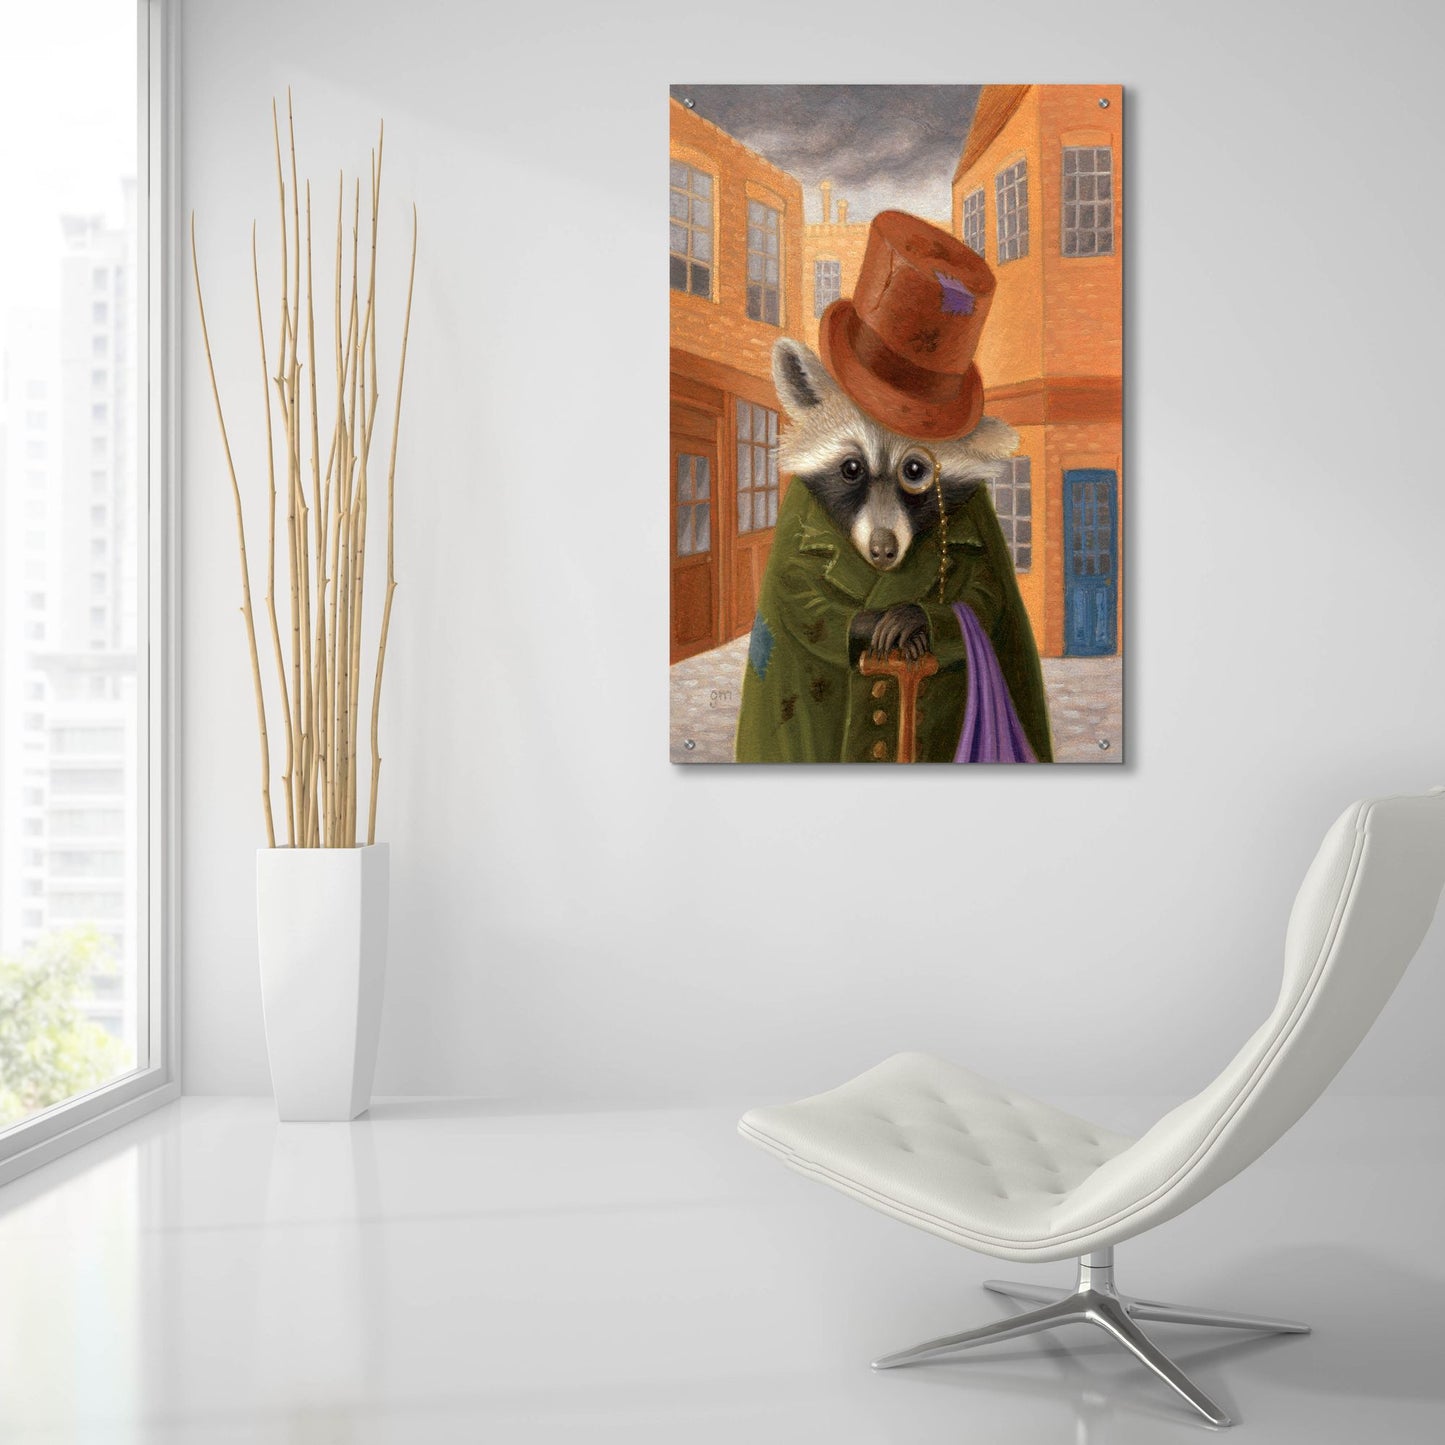 Epic Art 'Dodger' by Gina Matarazzo, Acrylic Glass Wall Art,24x36